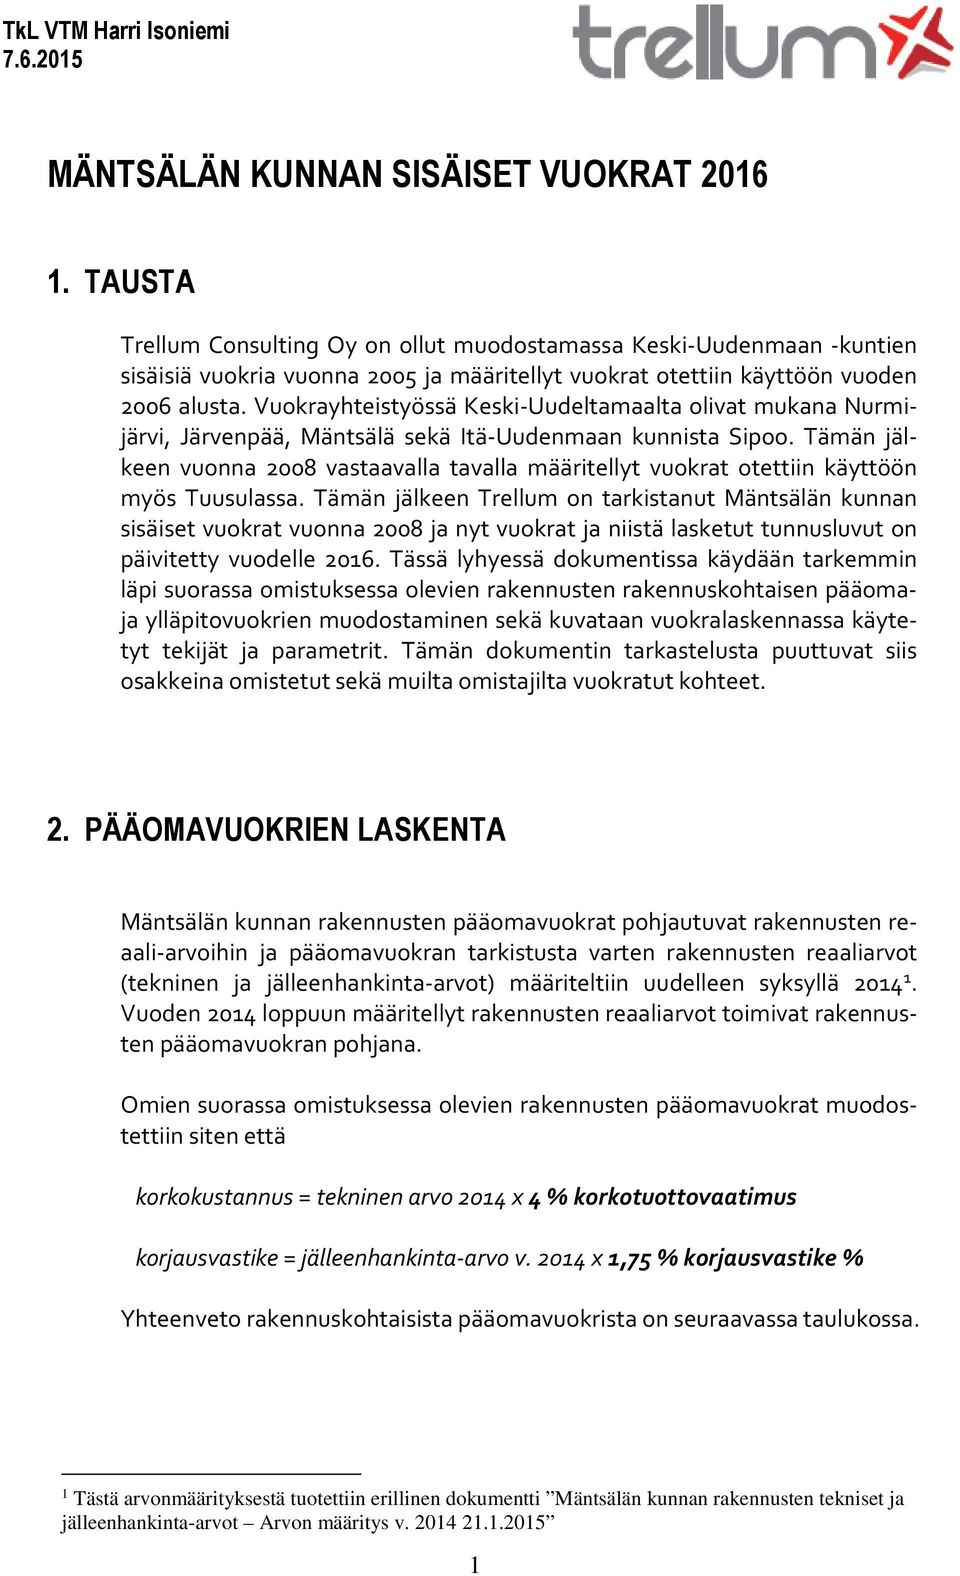 Vuokrayhteistyössä Keski-Uudeltamaalta olivat mukana Nurmijärvi, Järvenpää, Mäntsälä sekä Itä-Uudenmaan kunnista Sipoo.